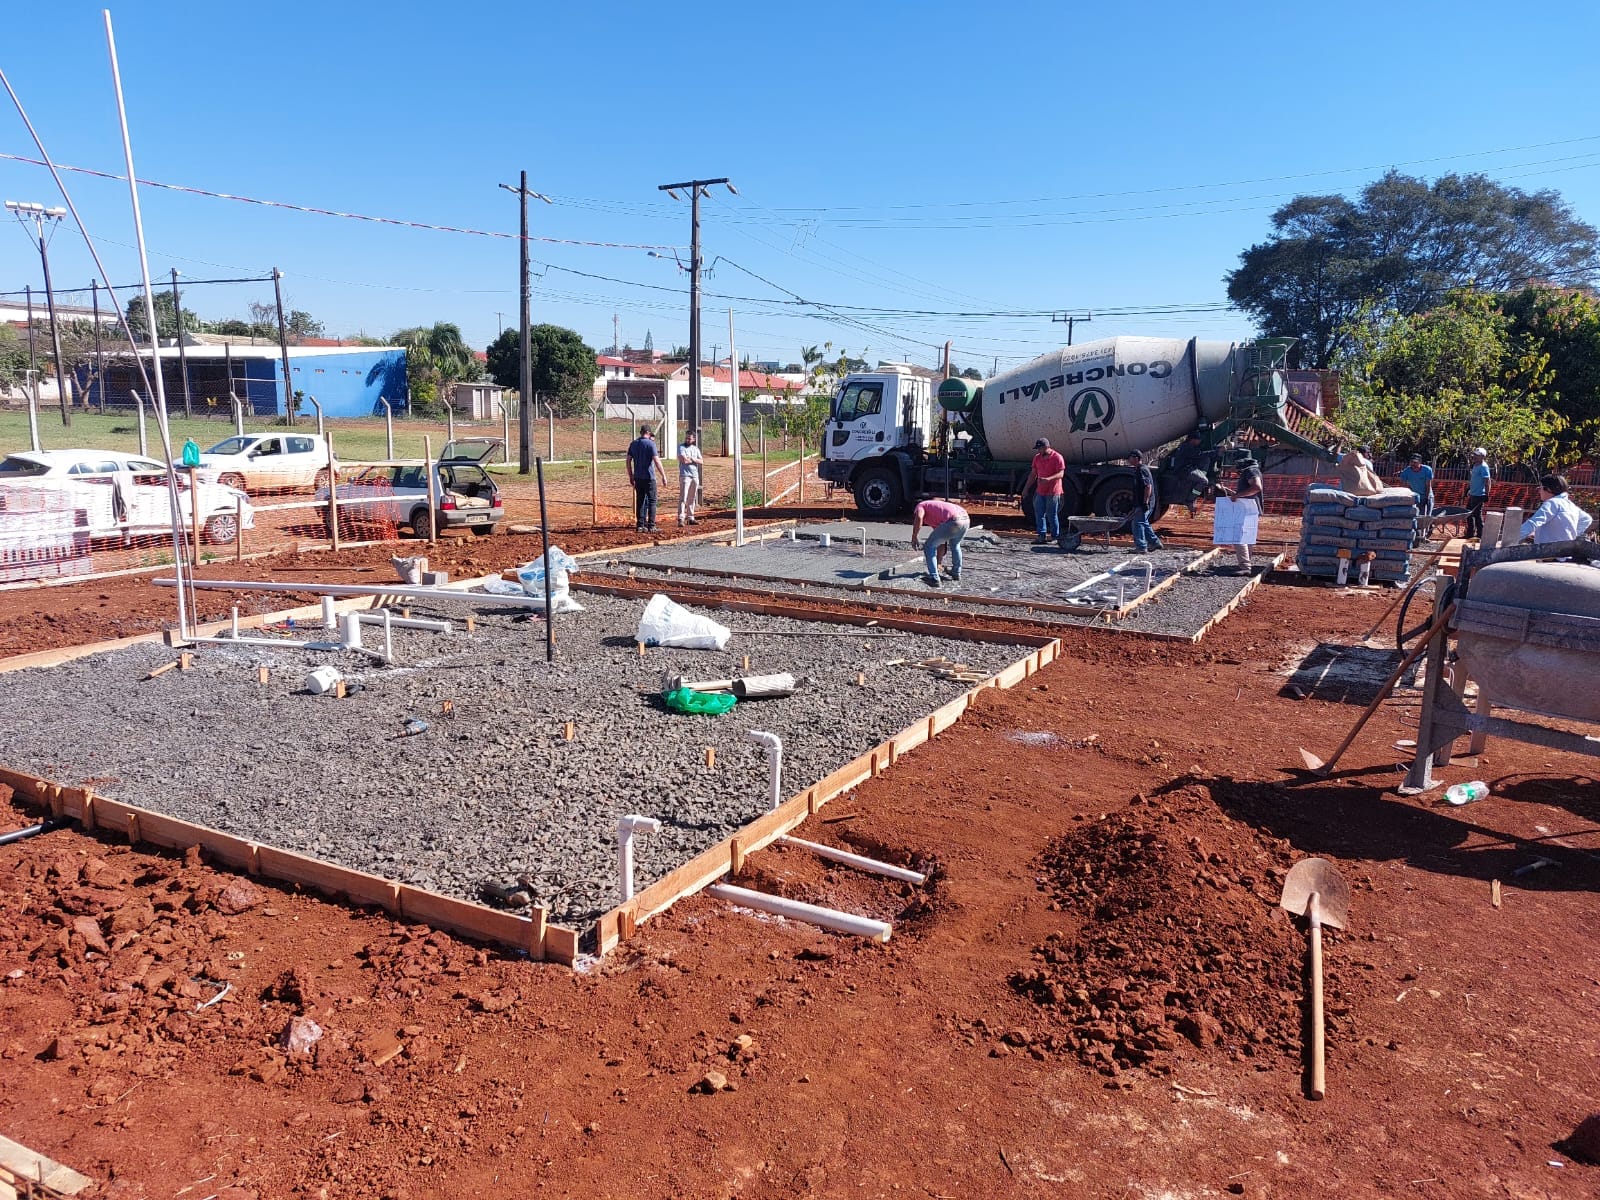 Programa habitacional 'Casa Viva' começa a ganhar forma em Ariranha do Ivaí com o início da construção da primeira casa